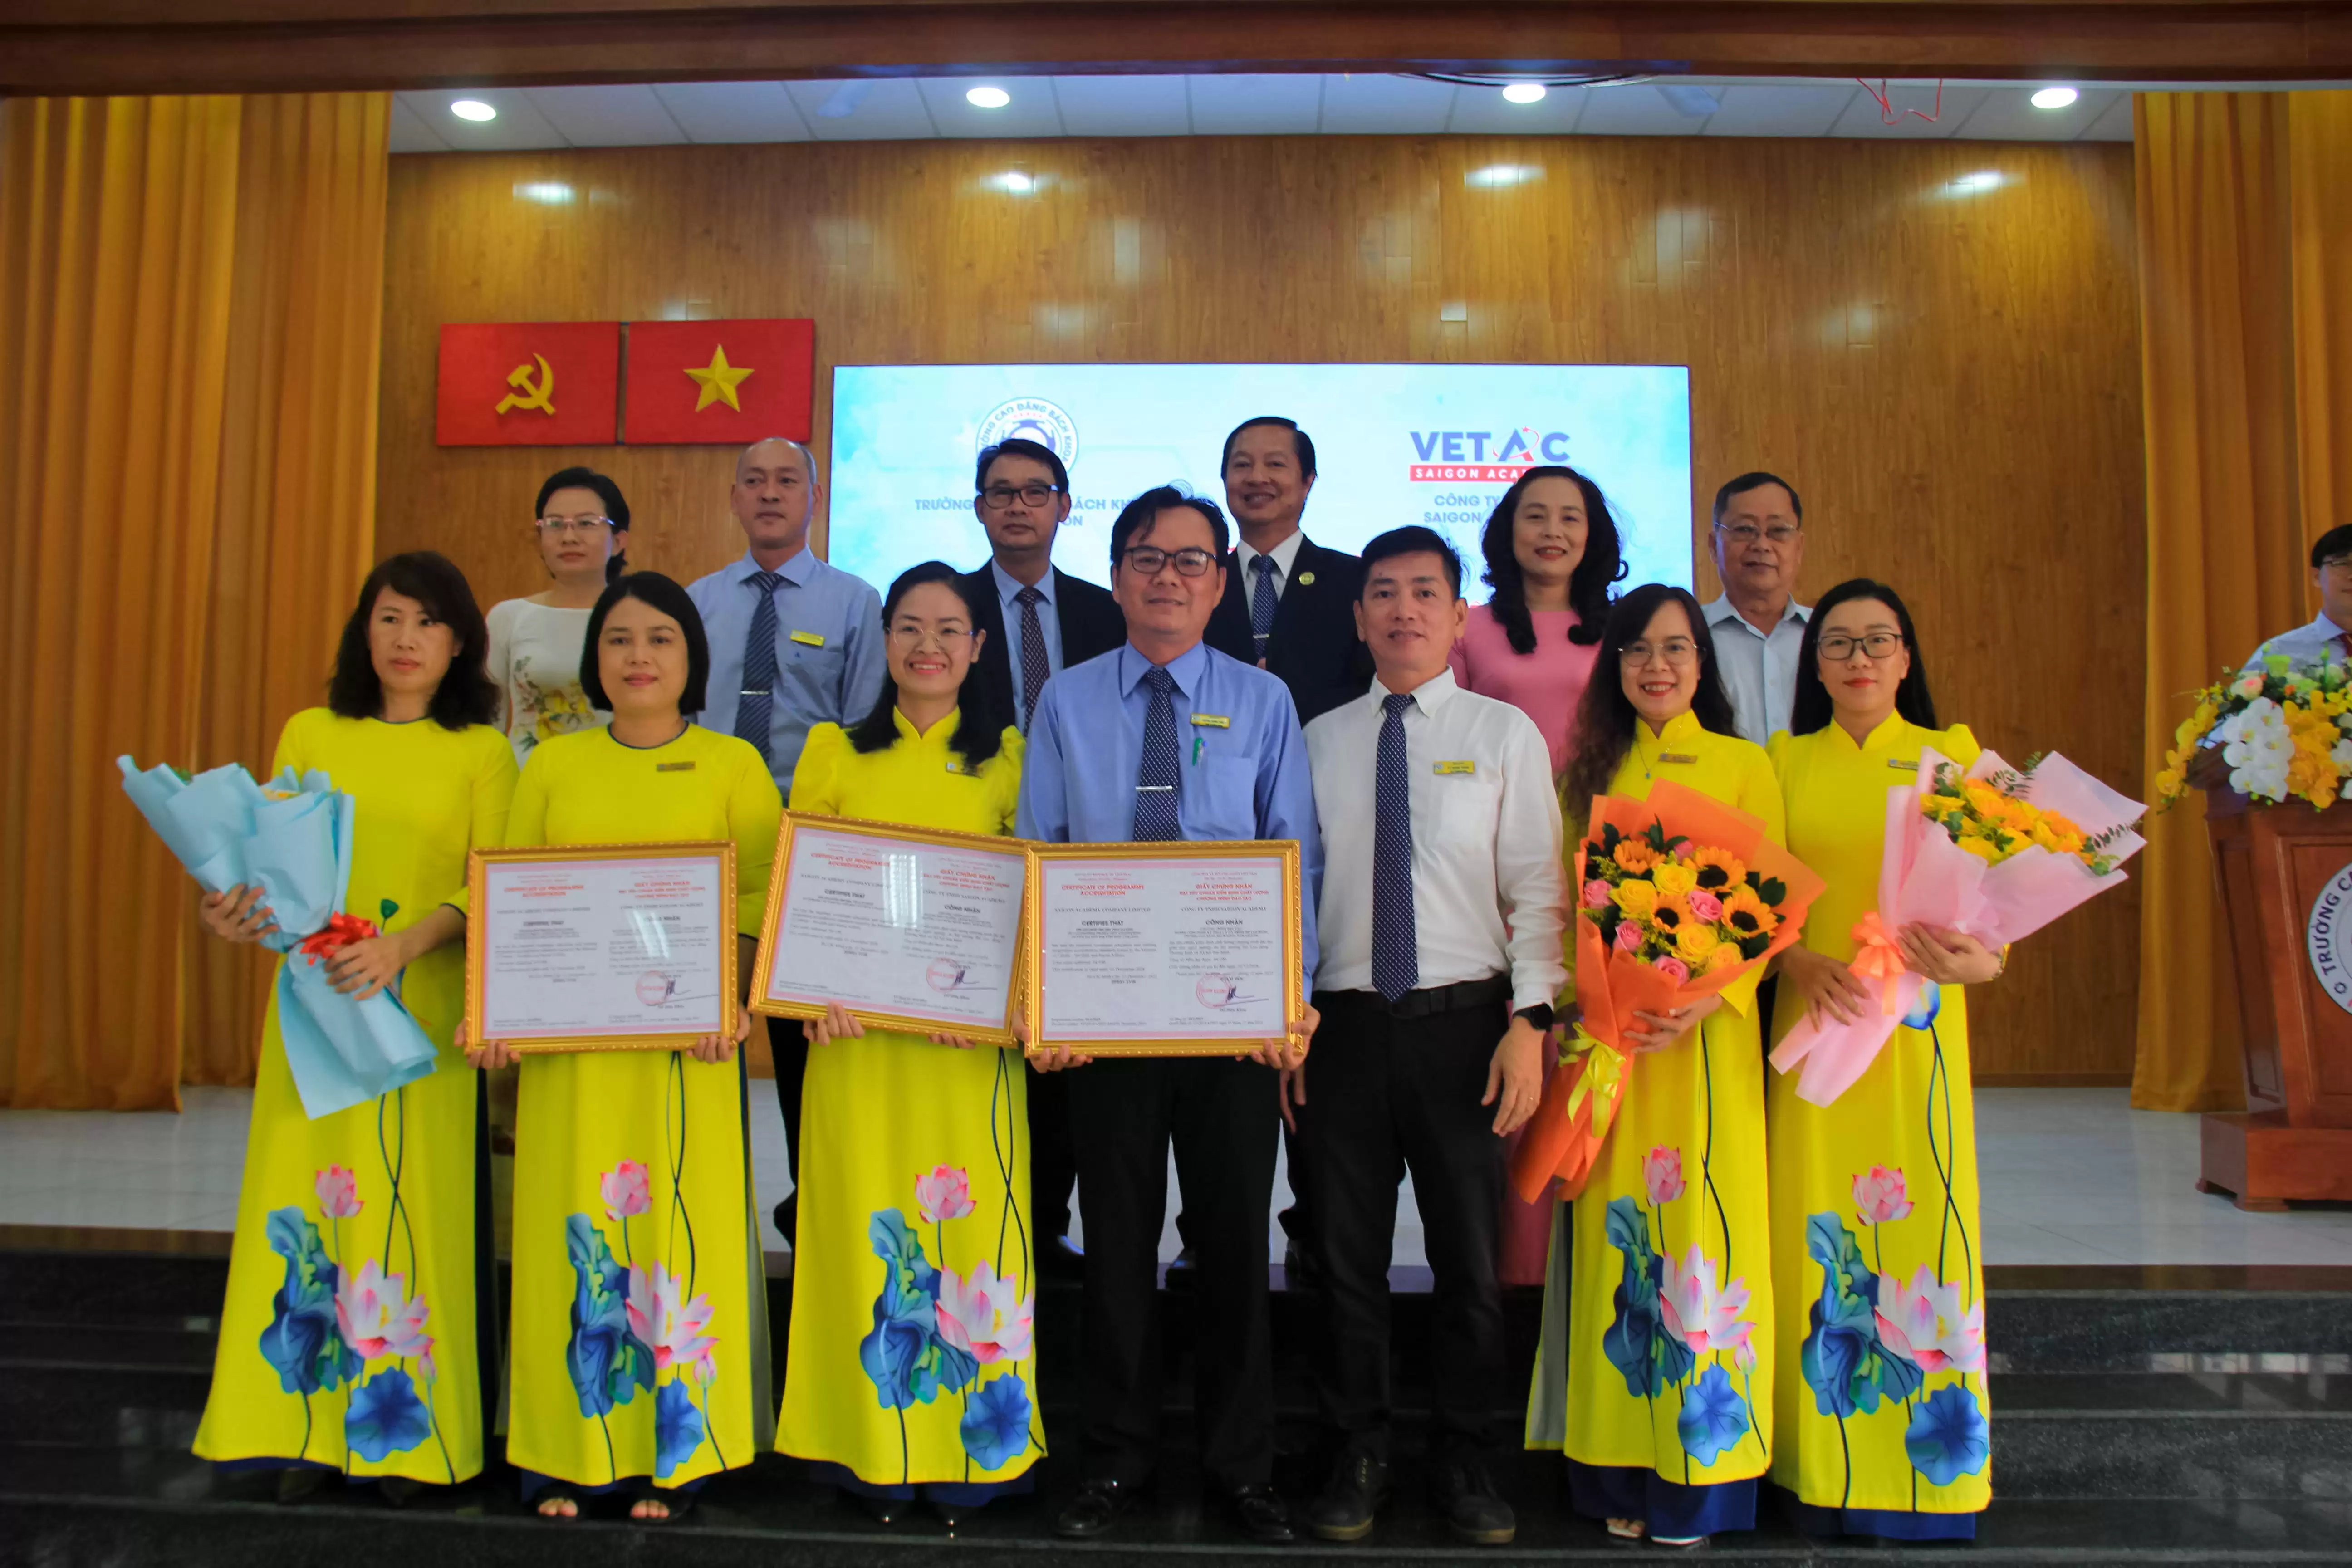 Lễ công bố quyết định và trao giấy chứng nhận kiểm định chất lượng cho 3 chương trình đào tạo trình độ Cao đẳng đạt tiêu chuẩn về giáo dục nghề nghiệp của Trường Cao đẳng Bách khoa Nam Sài Gòn